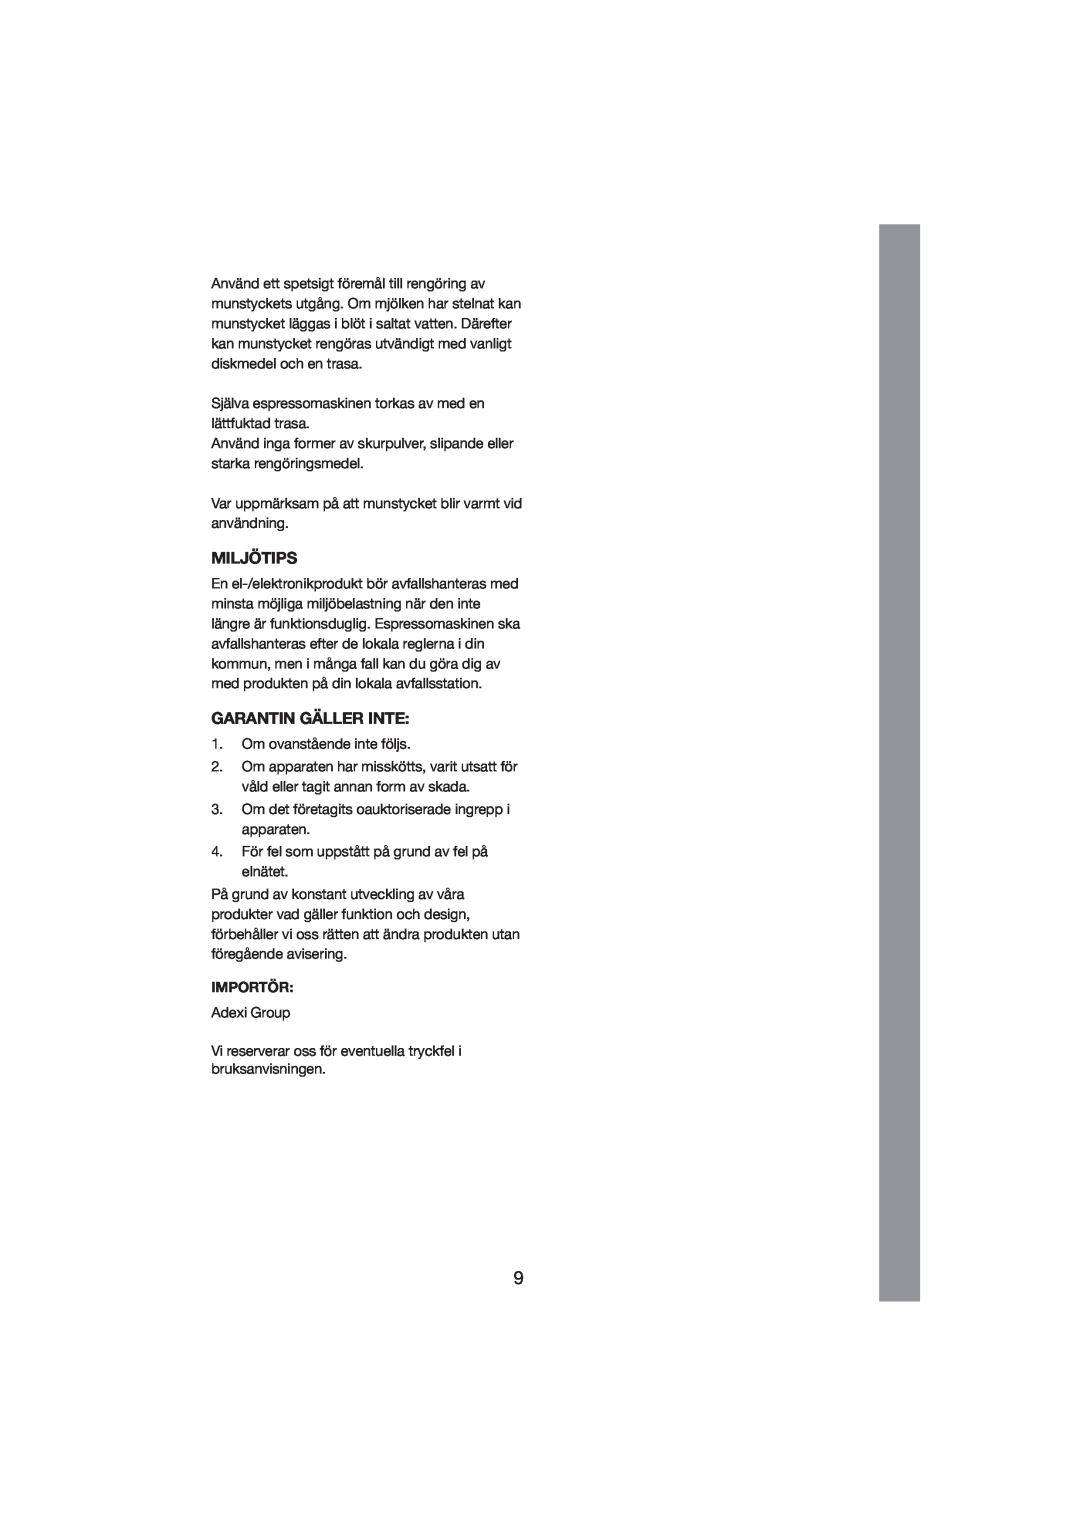 Melissa 245-027 manual Miljötips, Garantin Gäller Inte, Importör 